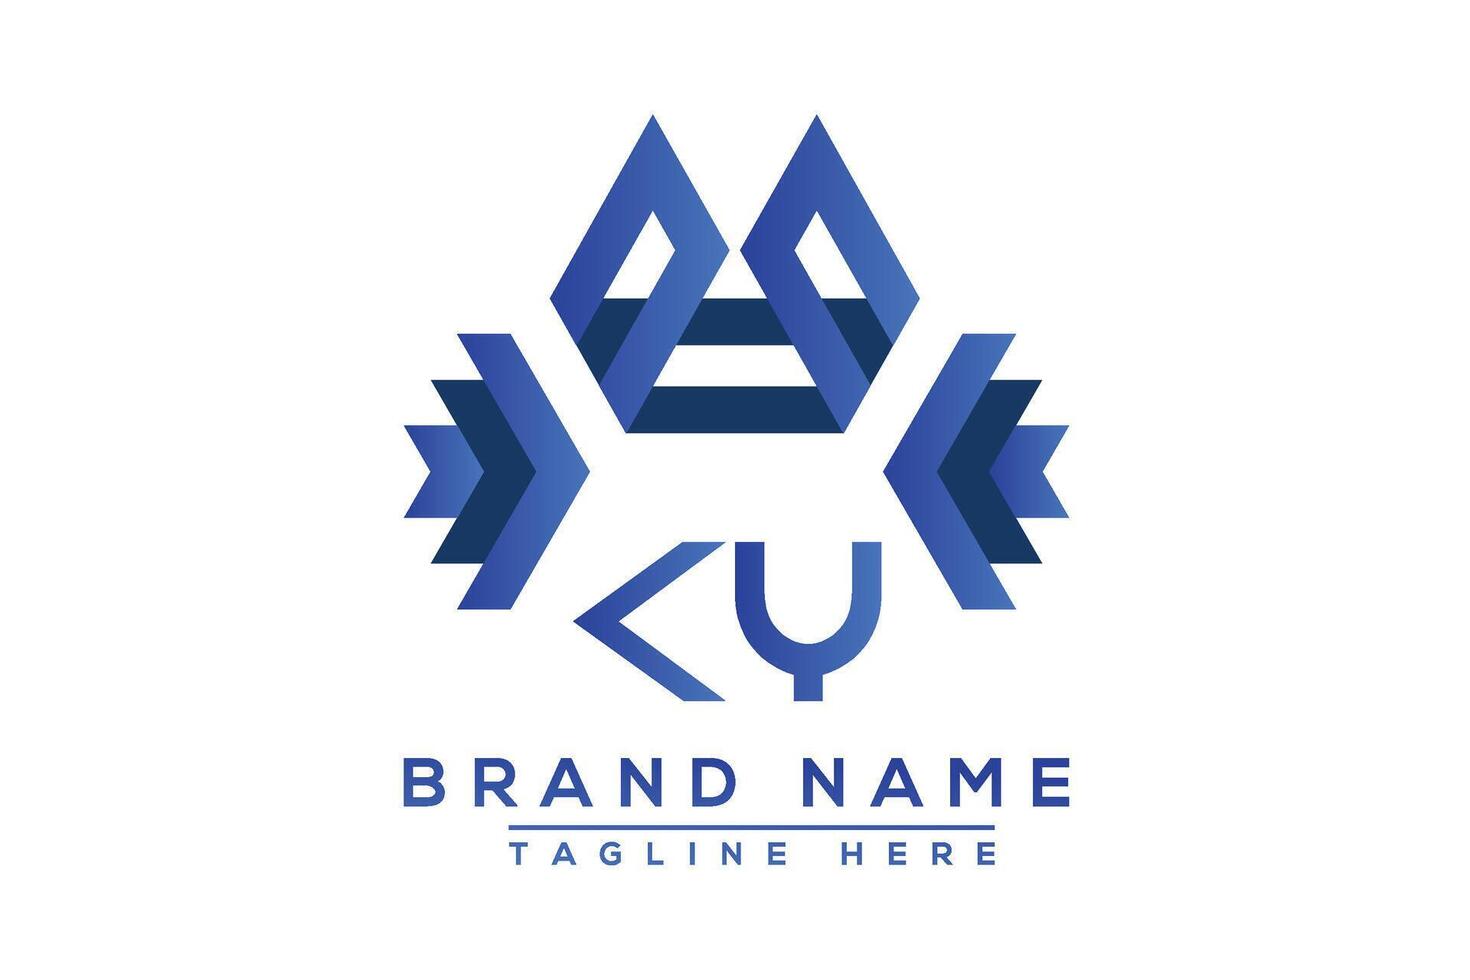 Brief ky Blau Logo Design. Vektor Logo Design zum Geschäft.